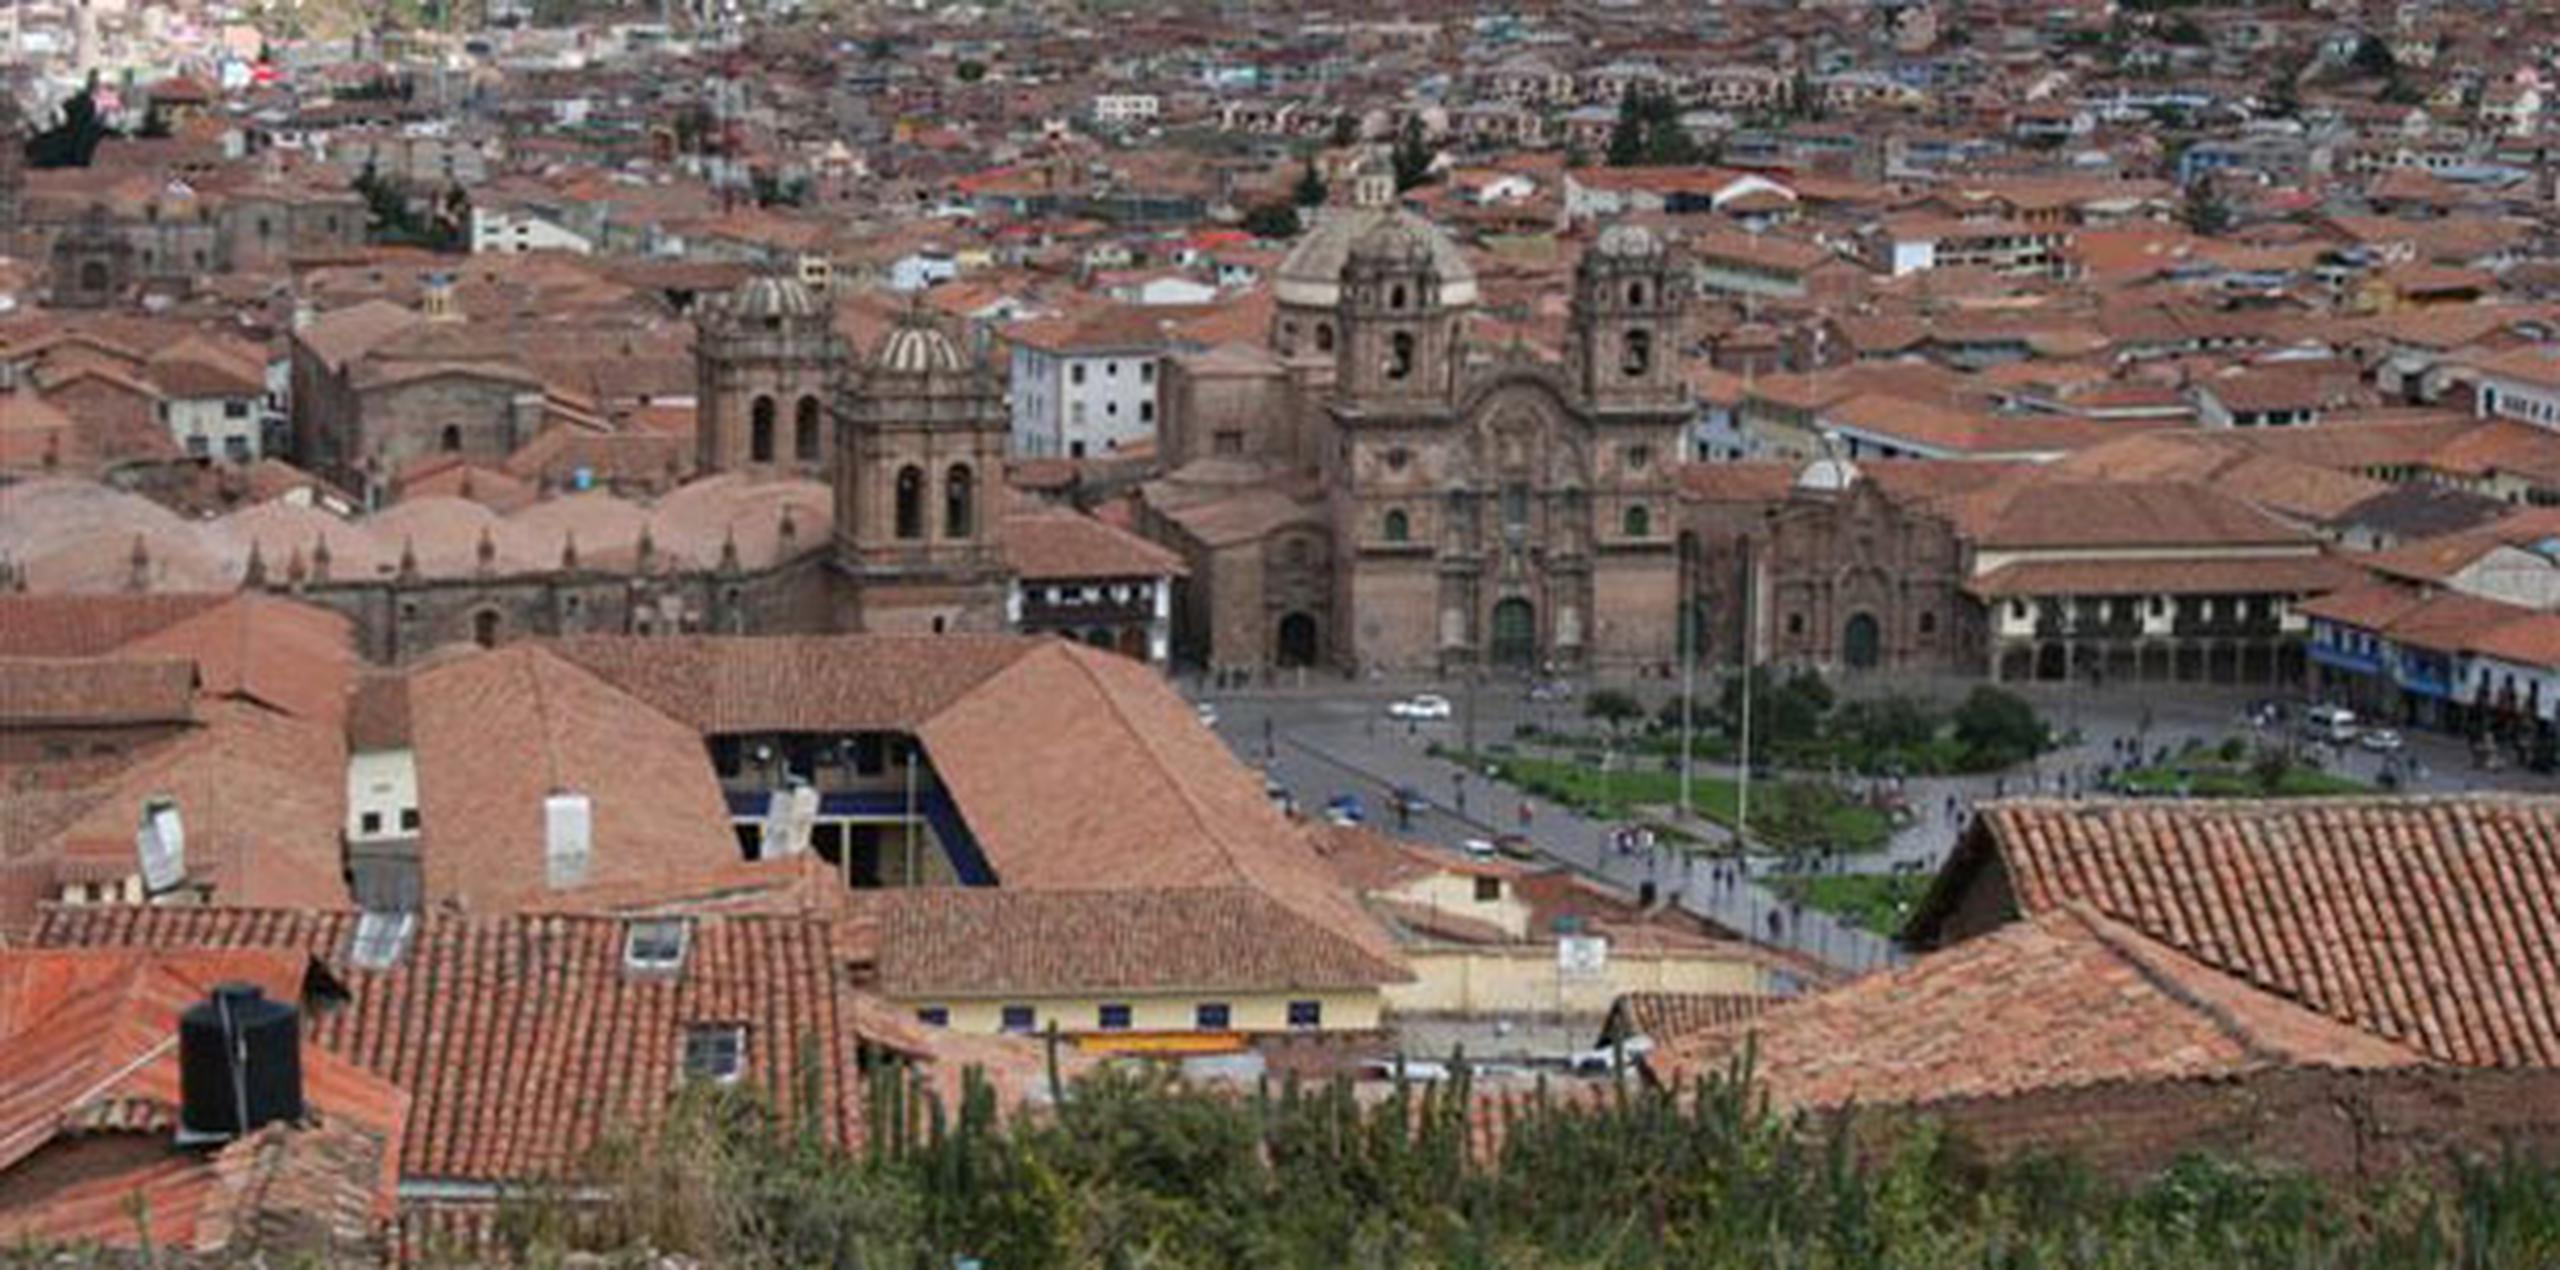 Nathaly Salazar, de 28 años, fue vista por última vez saliendo de su hotel en el Cuzco el 2 de enero con rumbo a Maras para visitar ese sitio arqueológico. (Archivo)